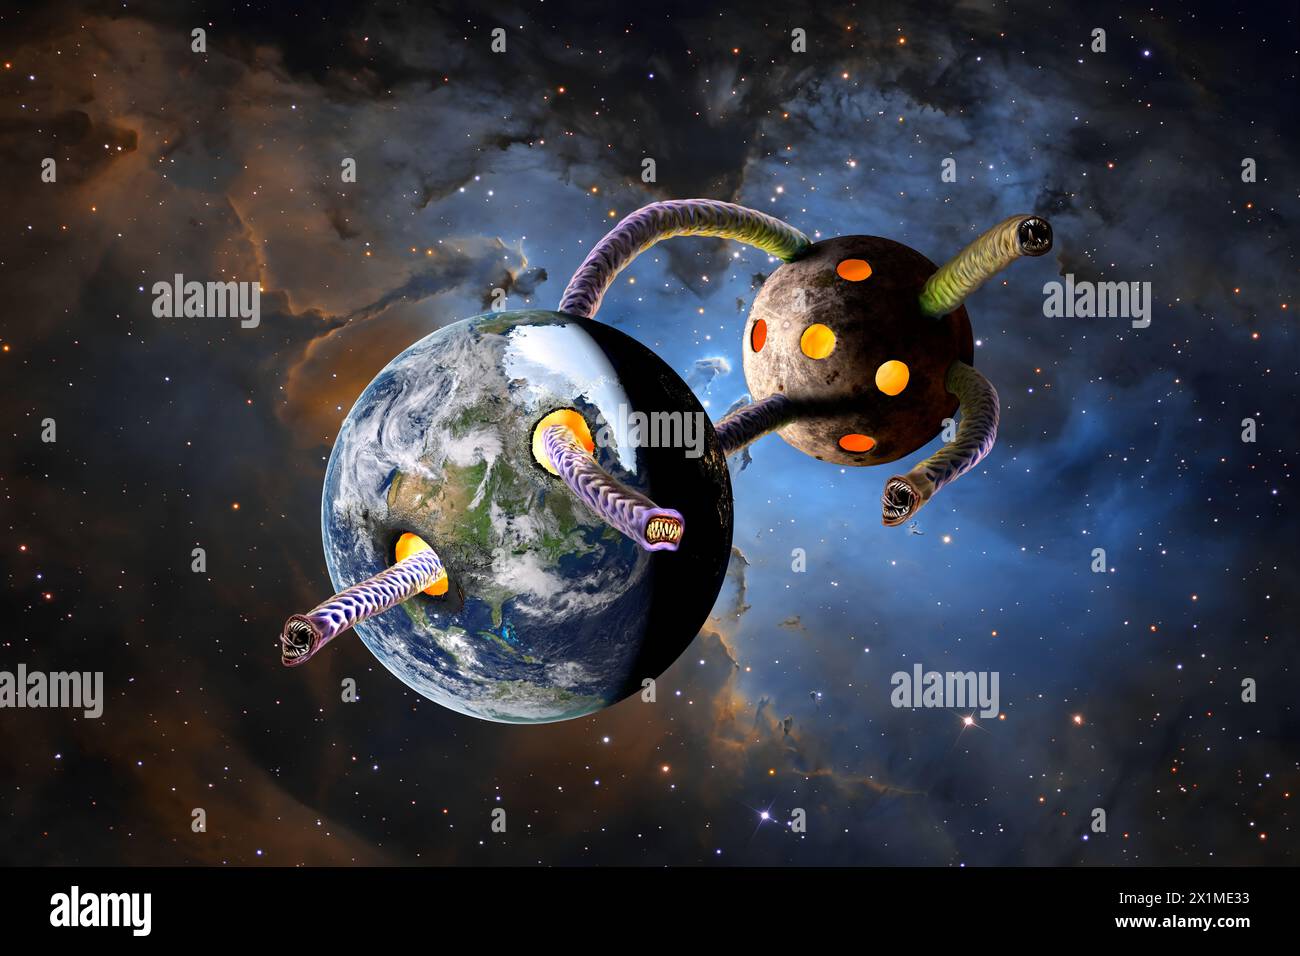 Une représentation de science-fiction d'un énorme Hydra Léviathan de l'espace attaquant la Terre en mâchant dans la planète. Banque D'Images